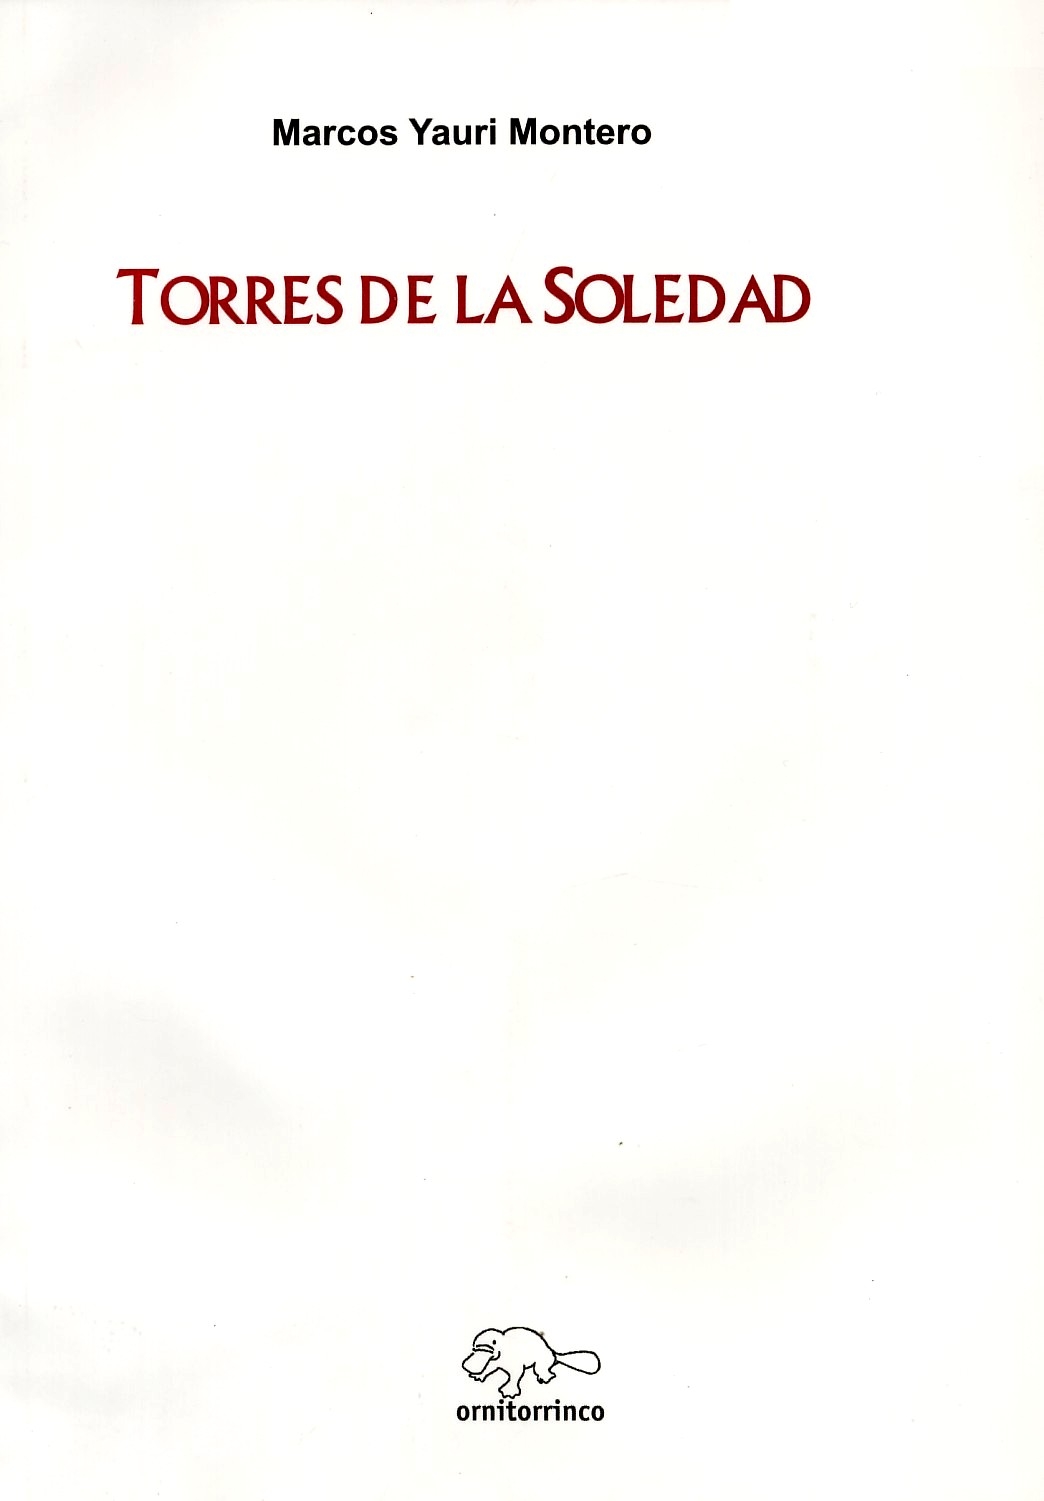 [Torres+de+la+soledad.JPG]